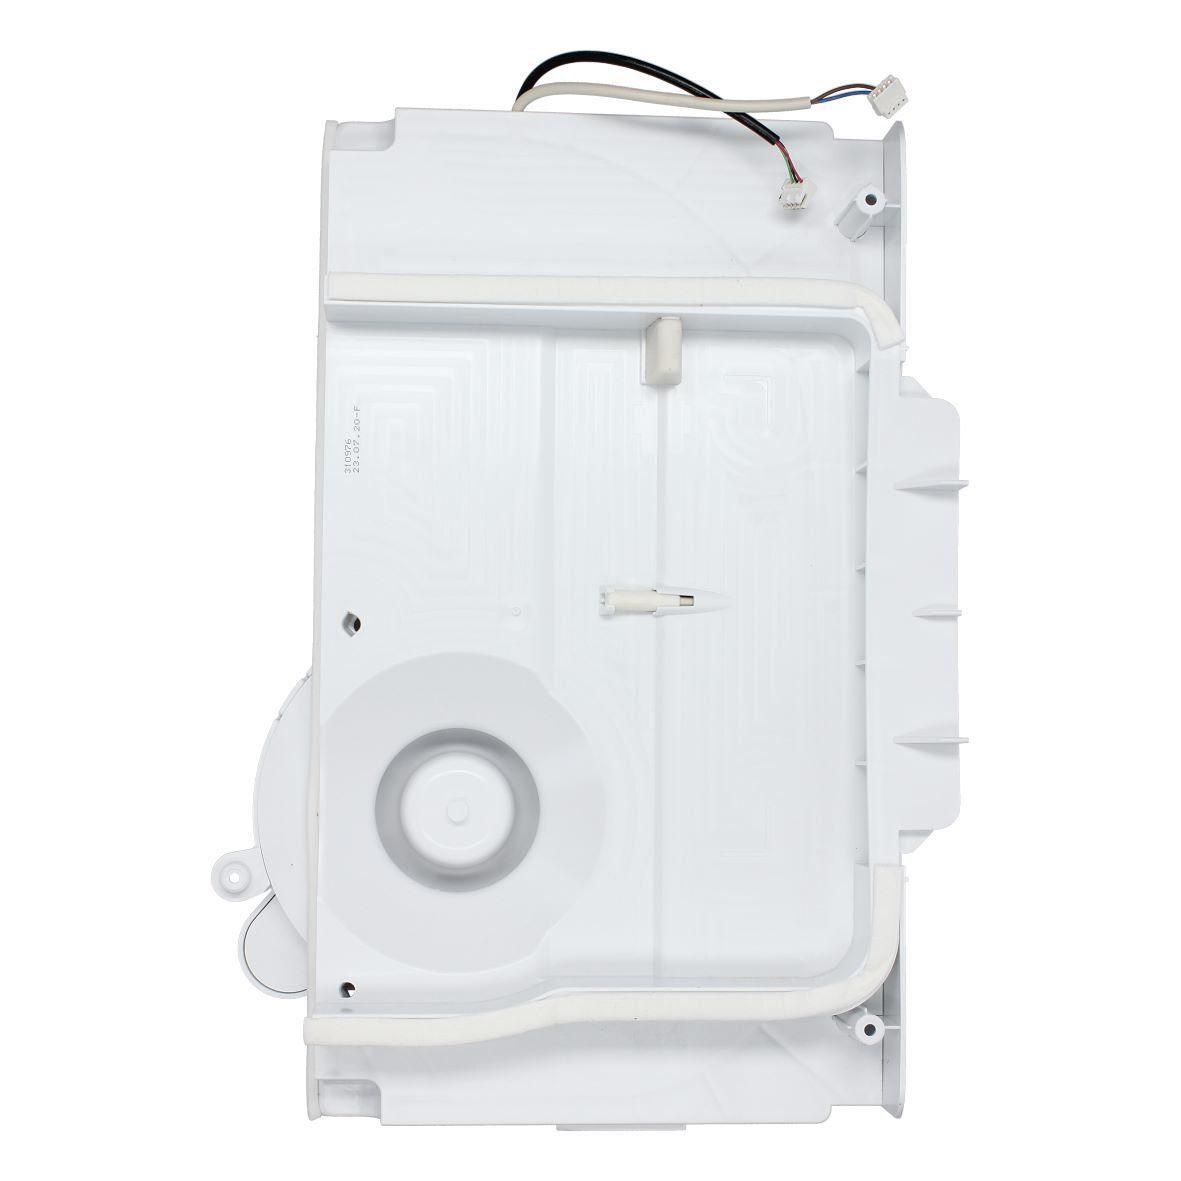 easyPART Montagezubehör BOSCH wie Kühlschrank mit Gefrierschrank Kühlschrank BOSCH, Druckraum / Ventilator 11036682